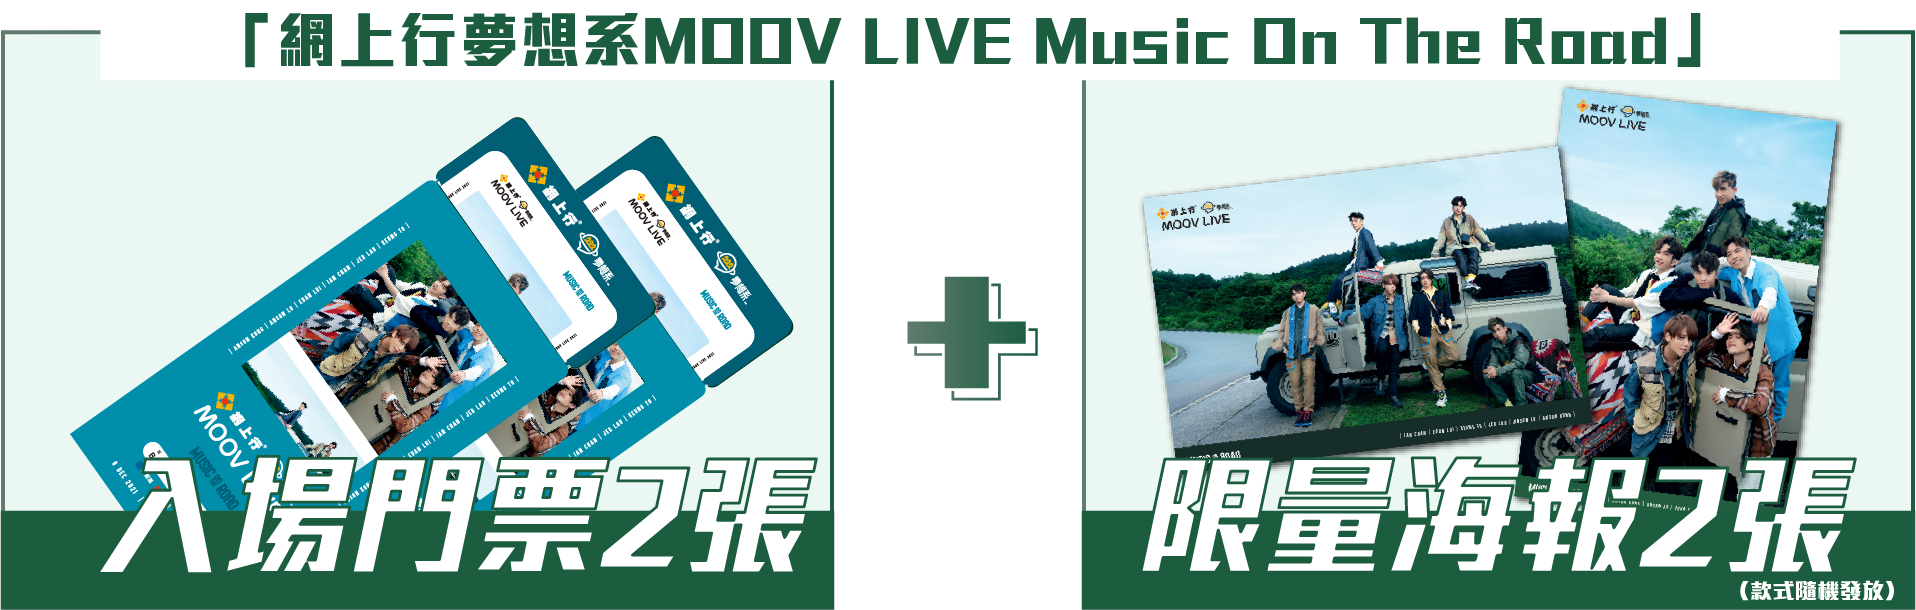 「網上行夢想系MOOV LIVE Music On The Road」入場門票2張+綵排門票2張